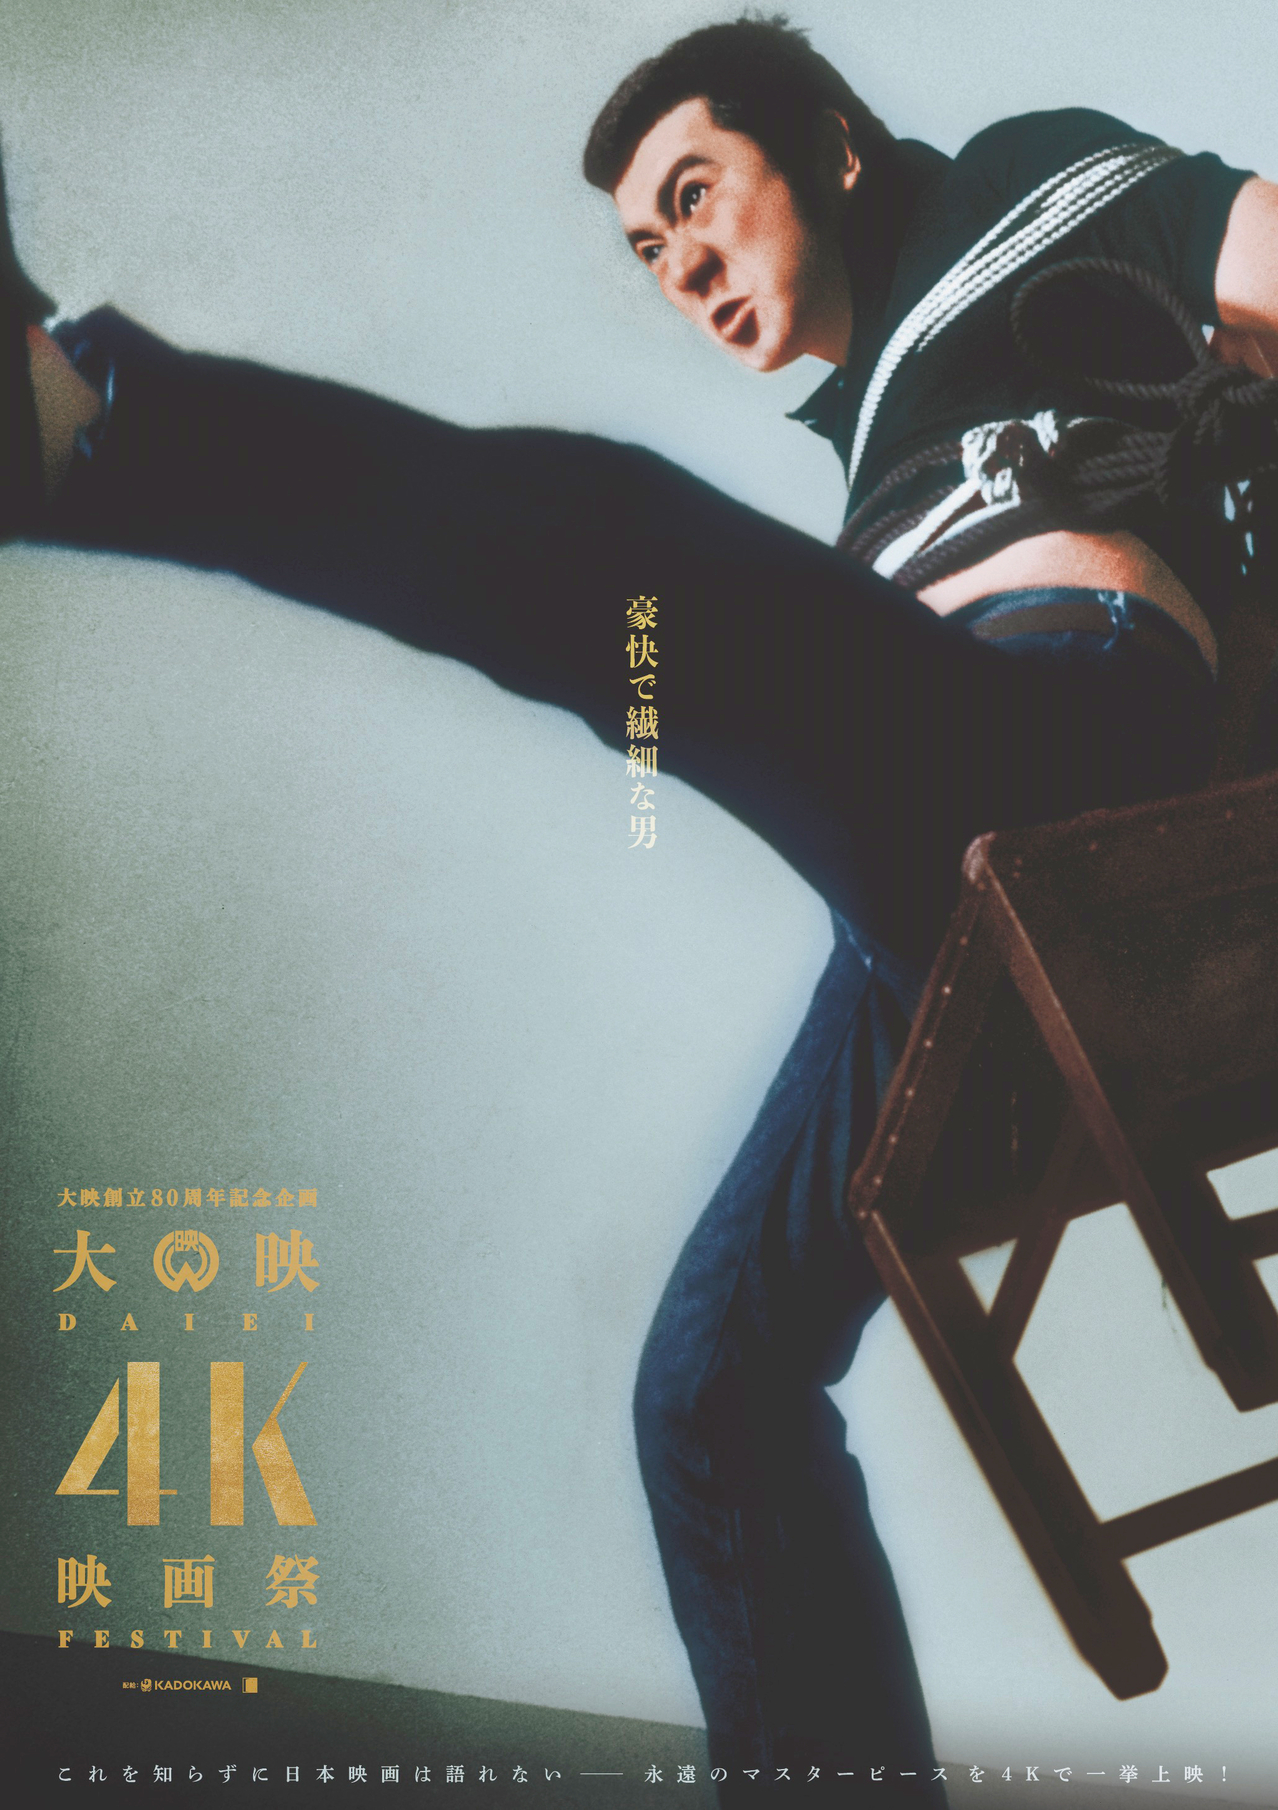 「大映4K映画祭」1月開催 京マチ子、市川雷蔵、山本富士子、若尾